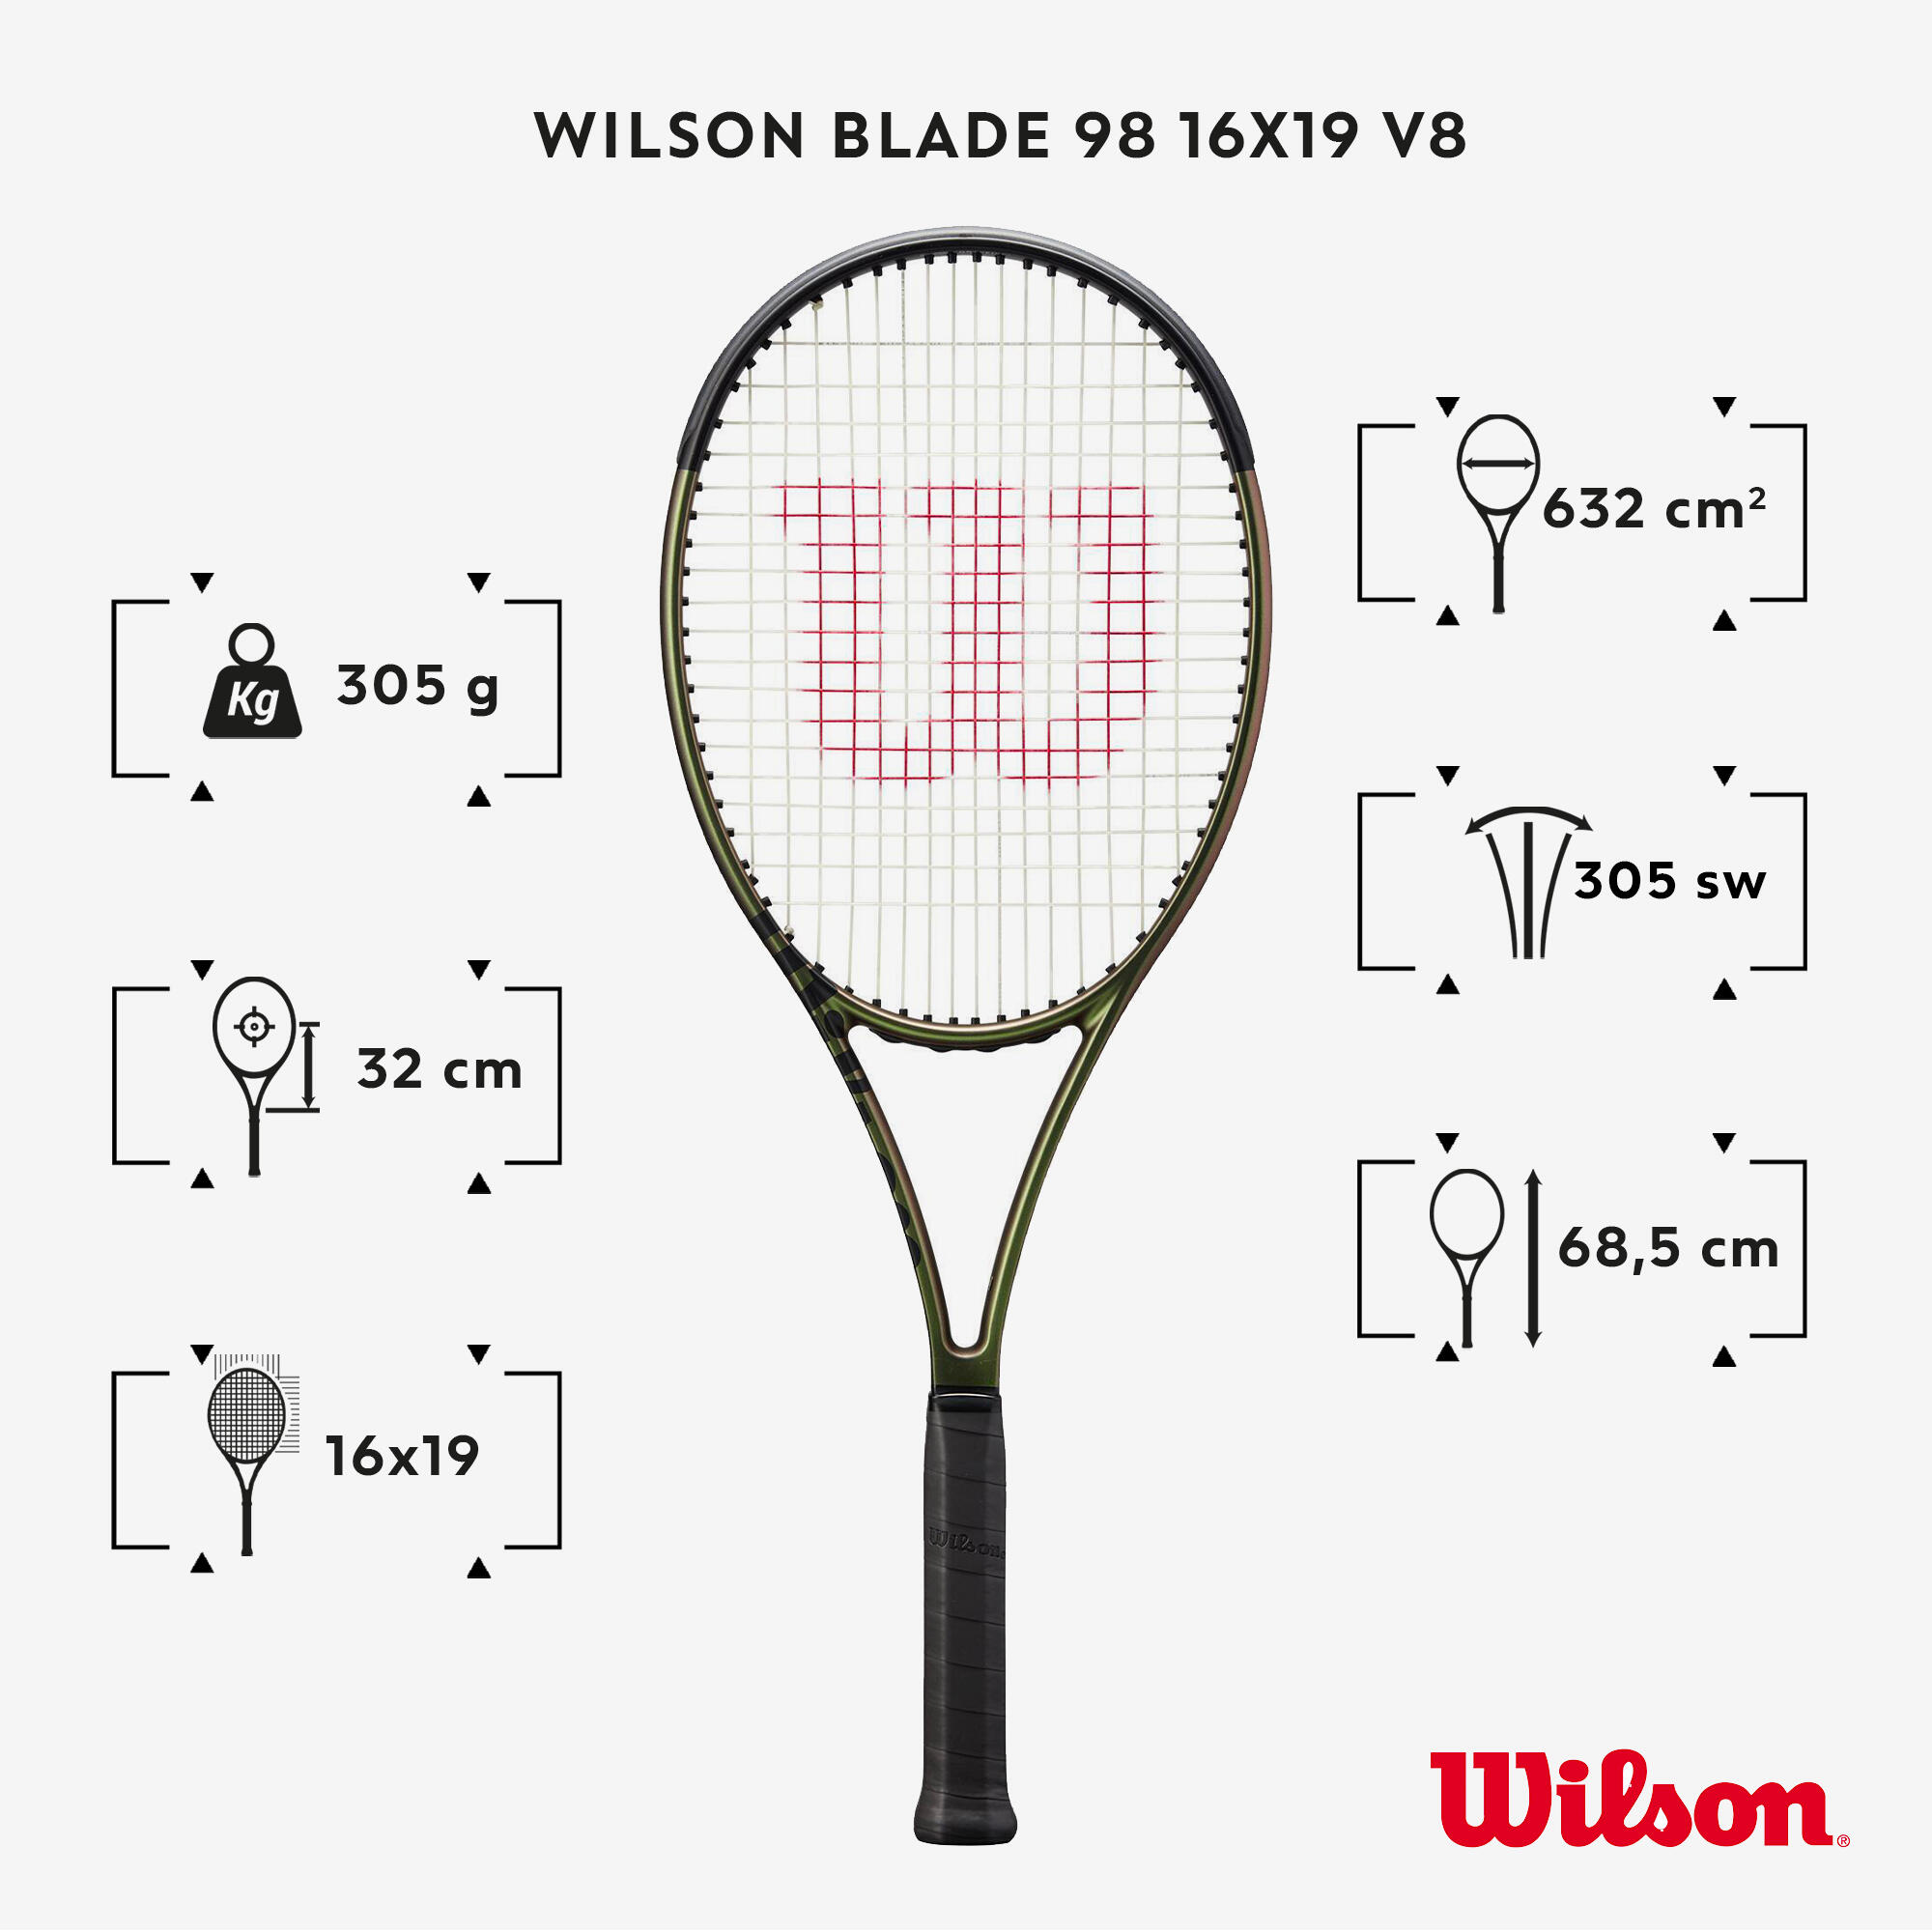 Adult Tennis Racket 98 16x19 V8 305g Unstrung - Green WILSON 